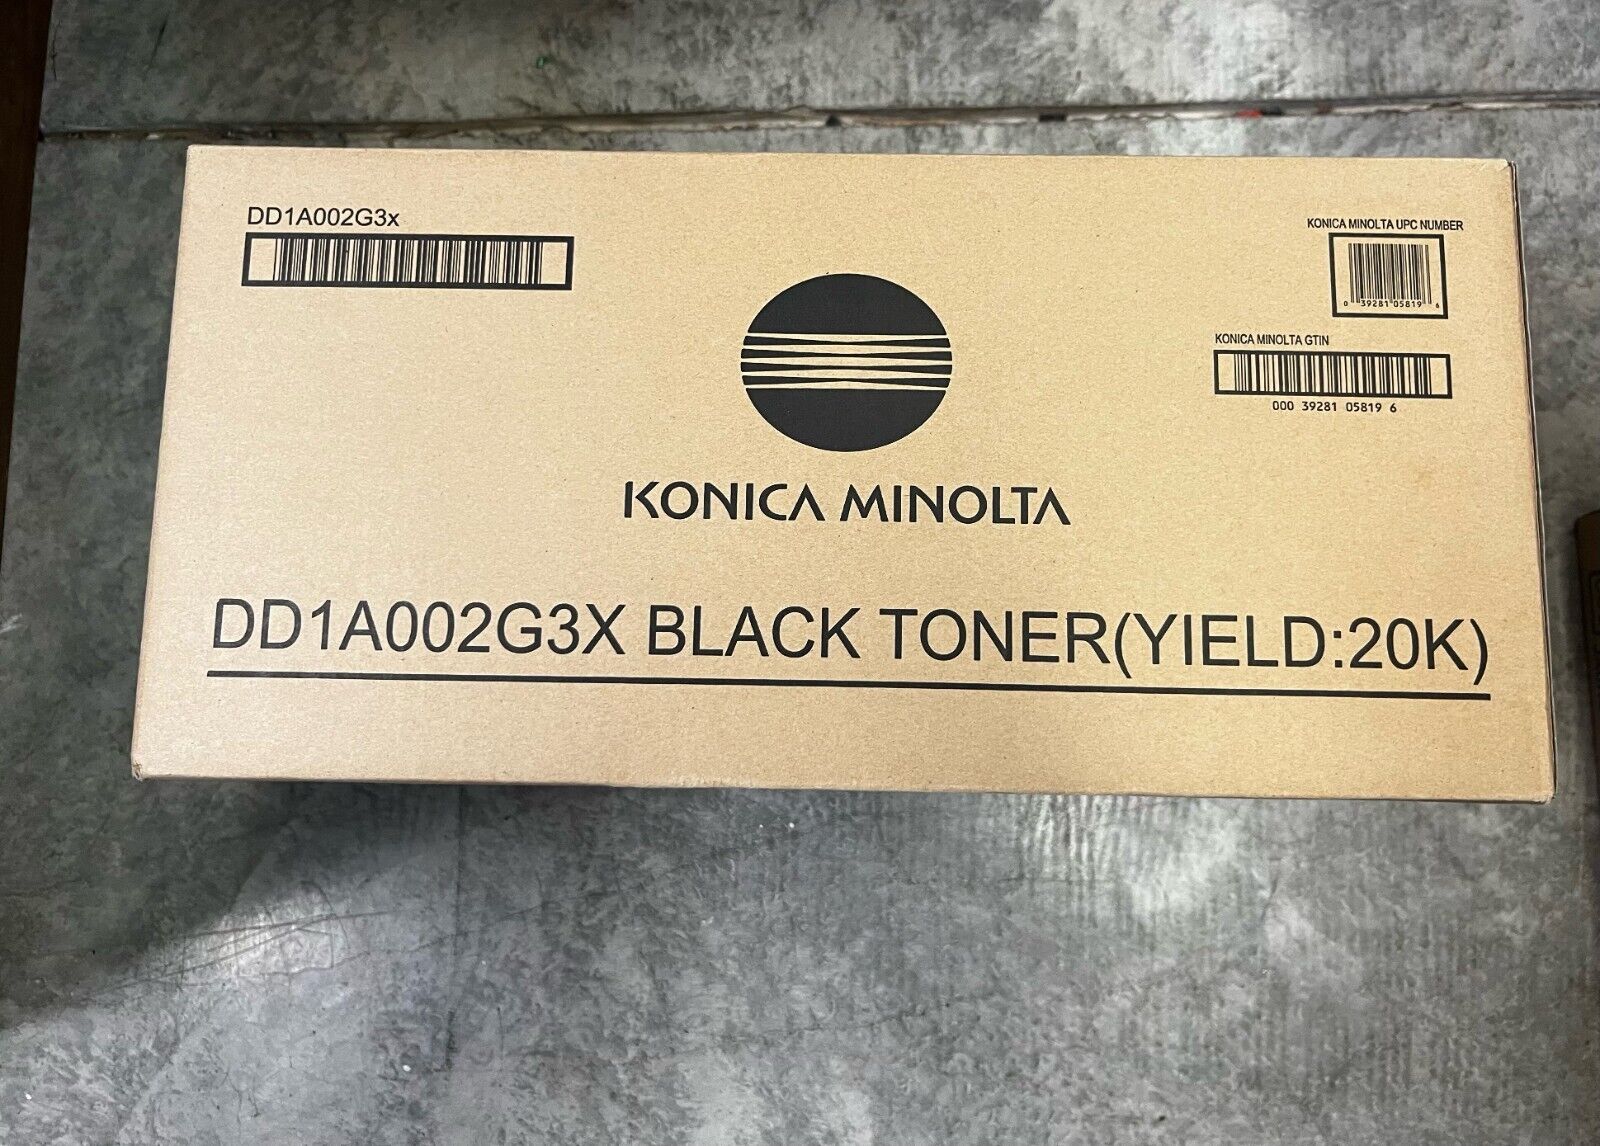 NEW Genuine Konica Minolta DD1A002G3X Toner Cartridge - Black